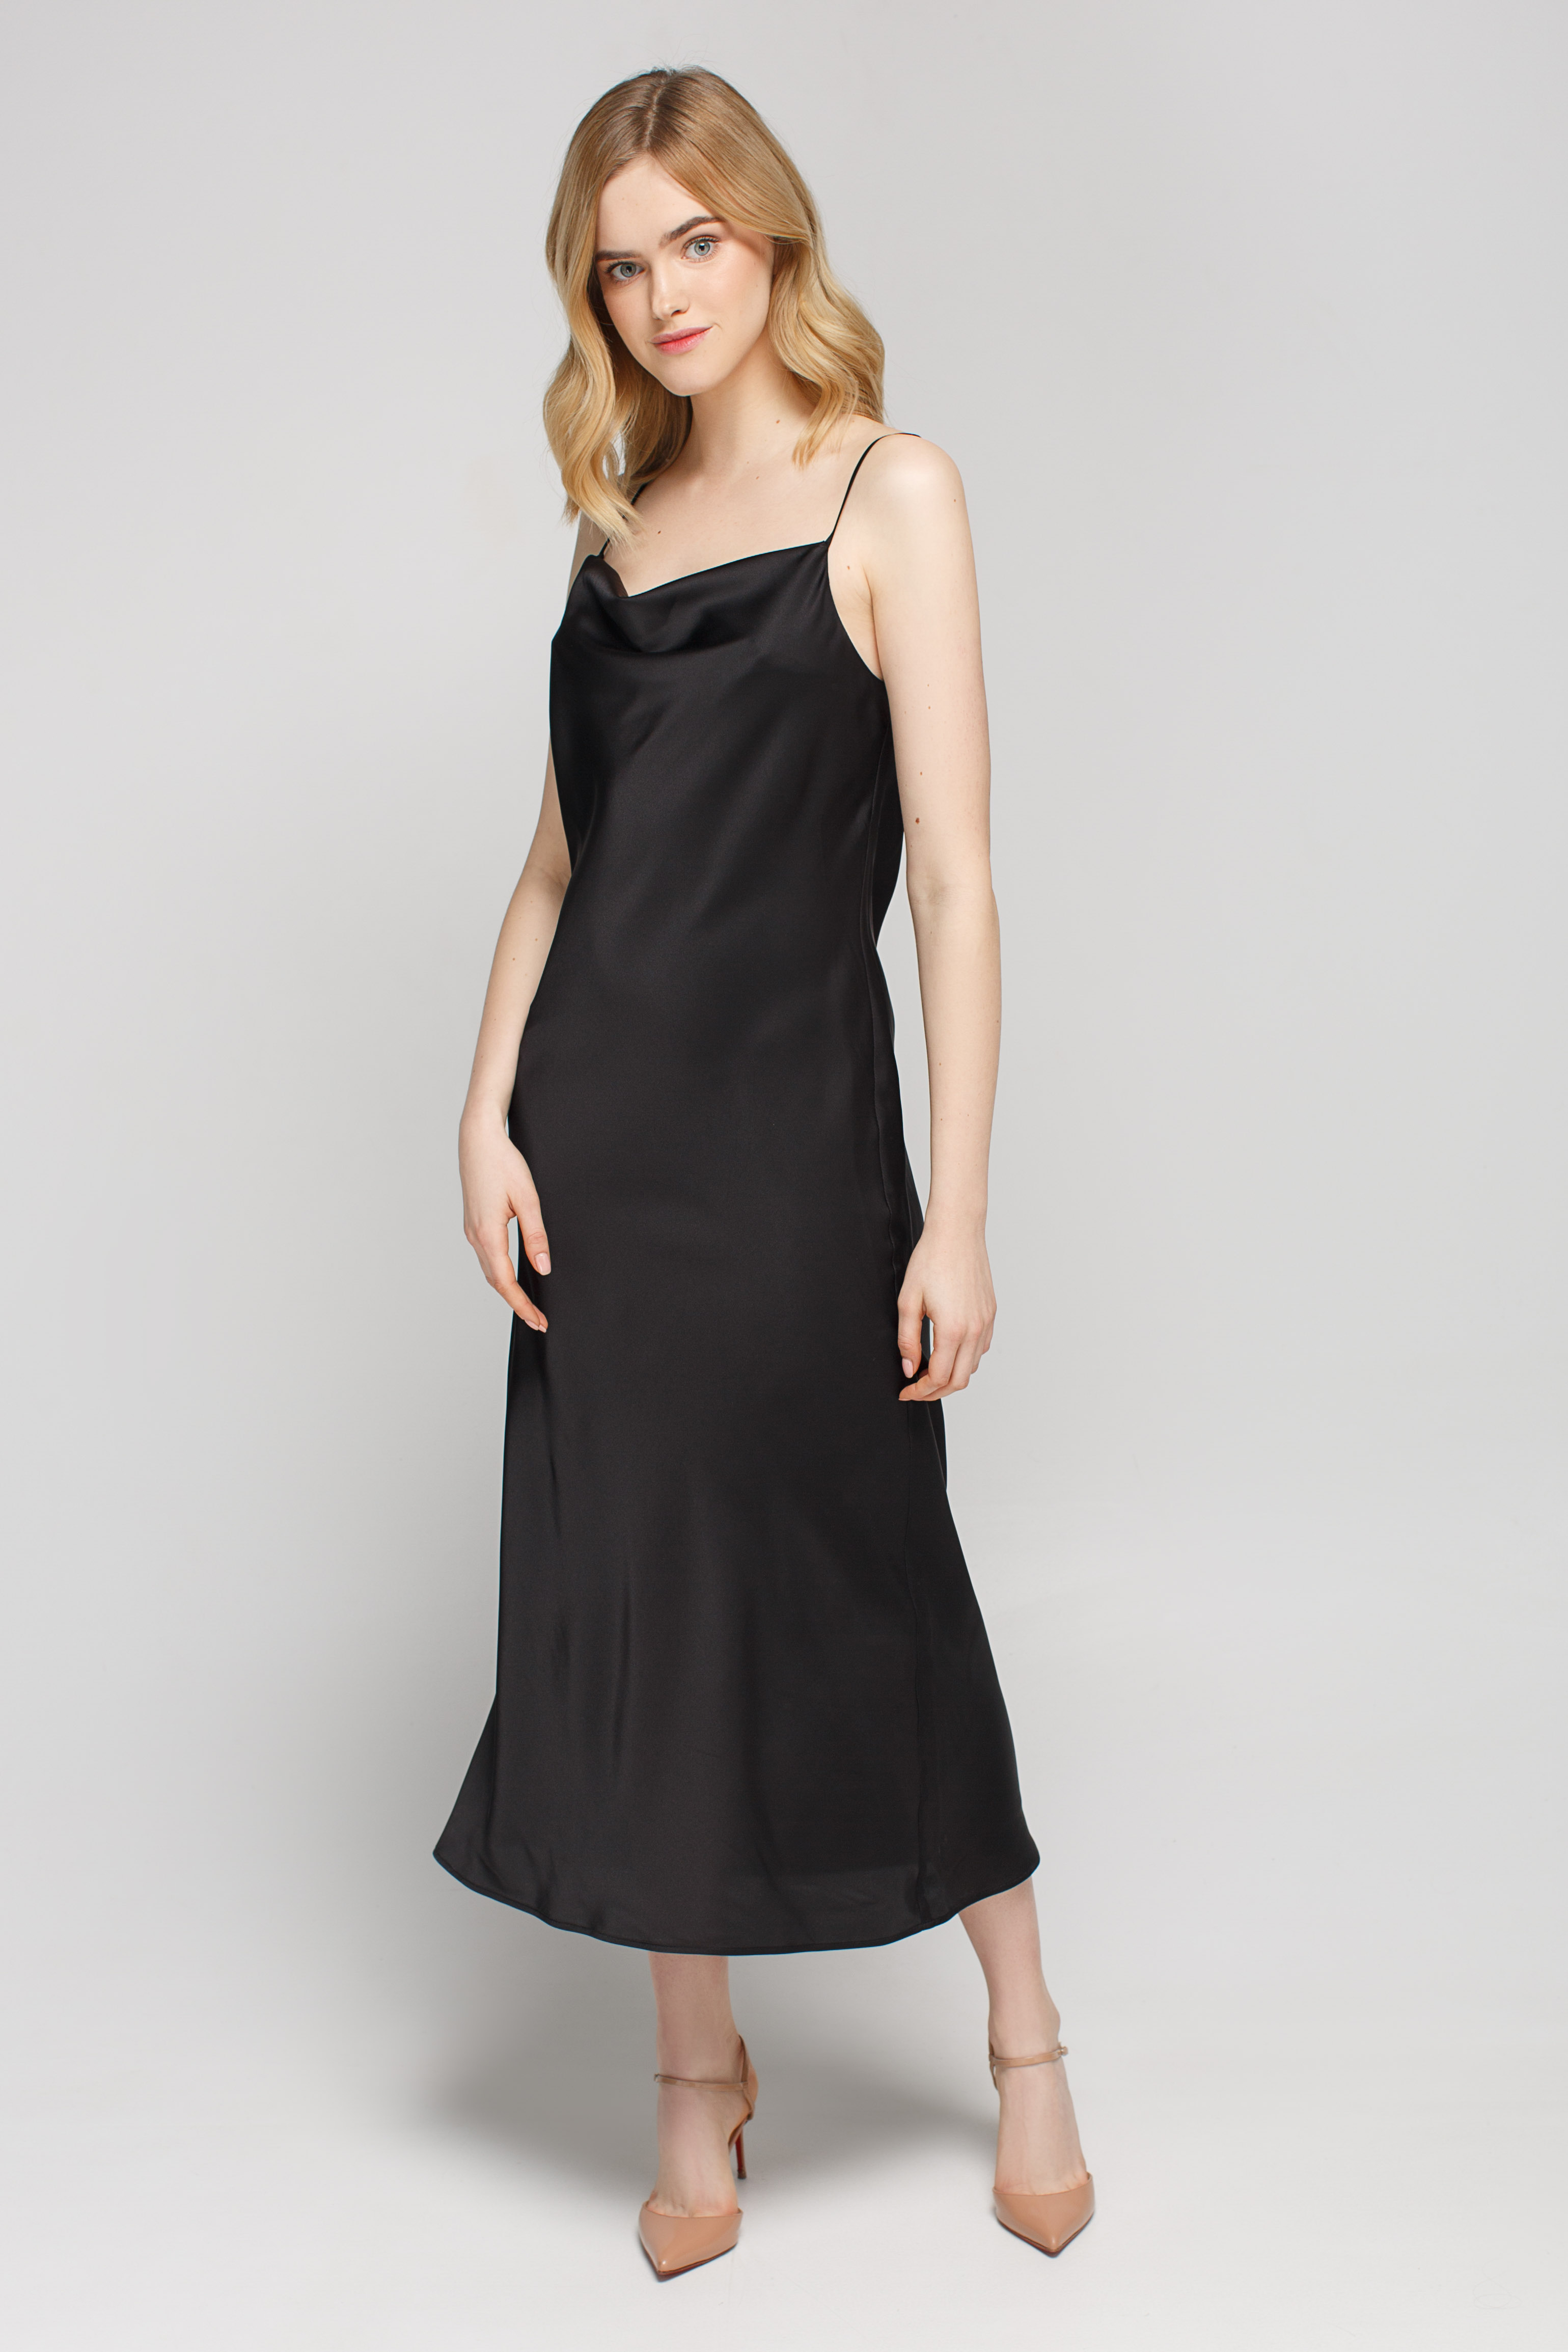 Платье-комбинация черного цвета со складкой в области декольте, фото 1